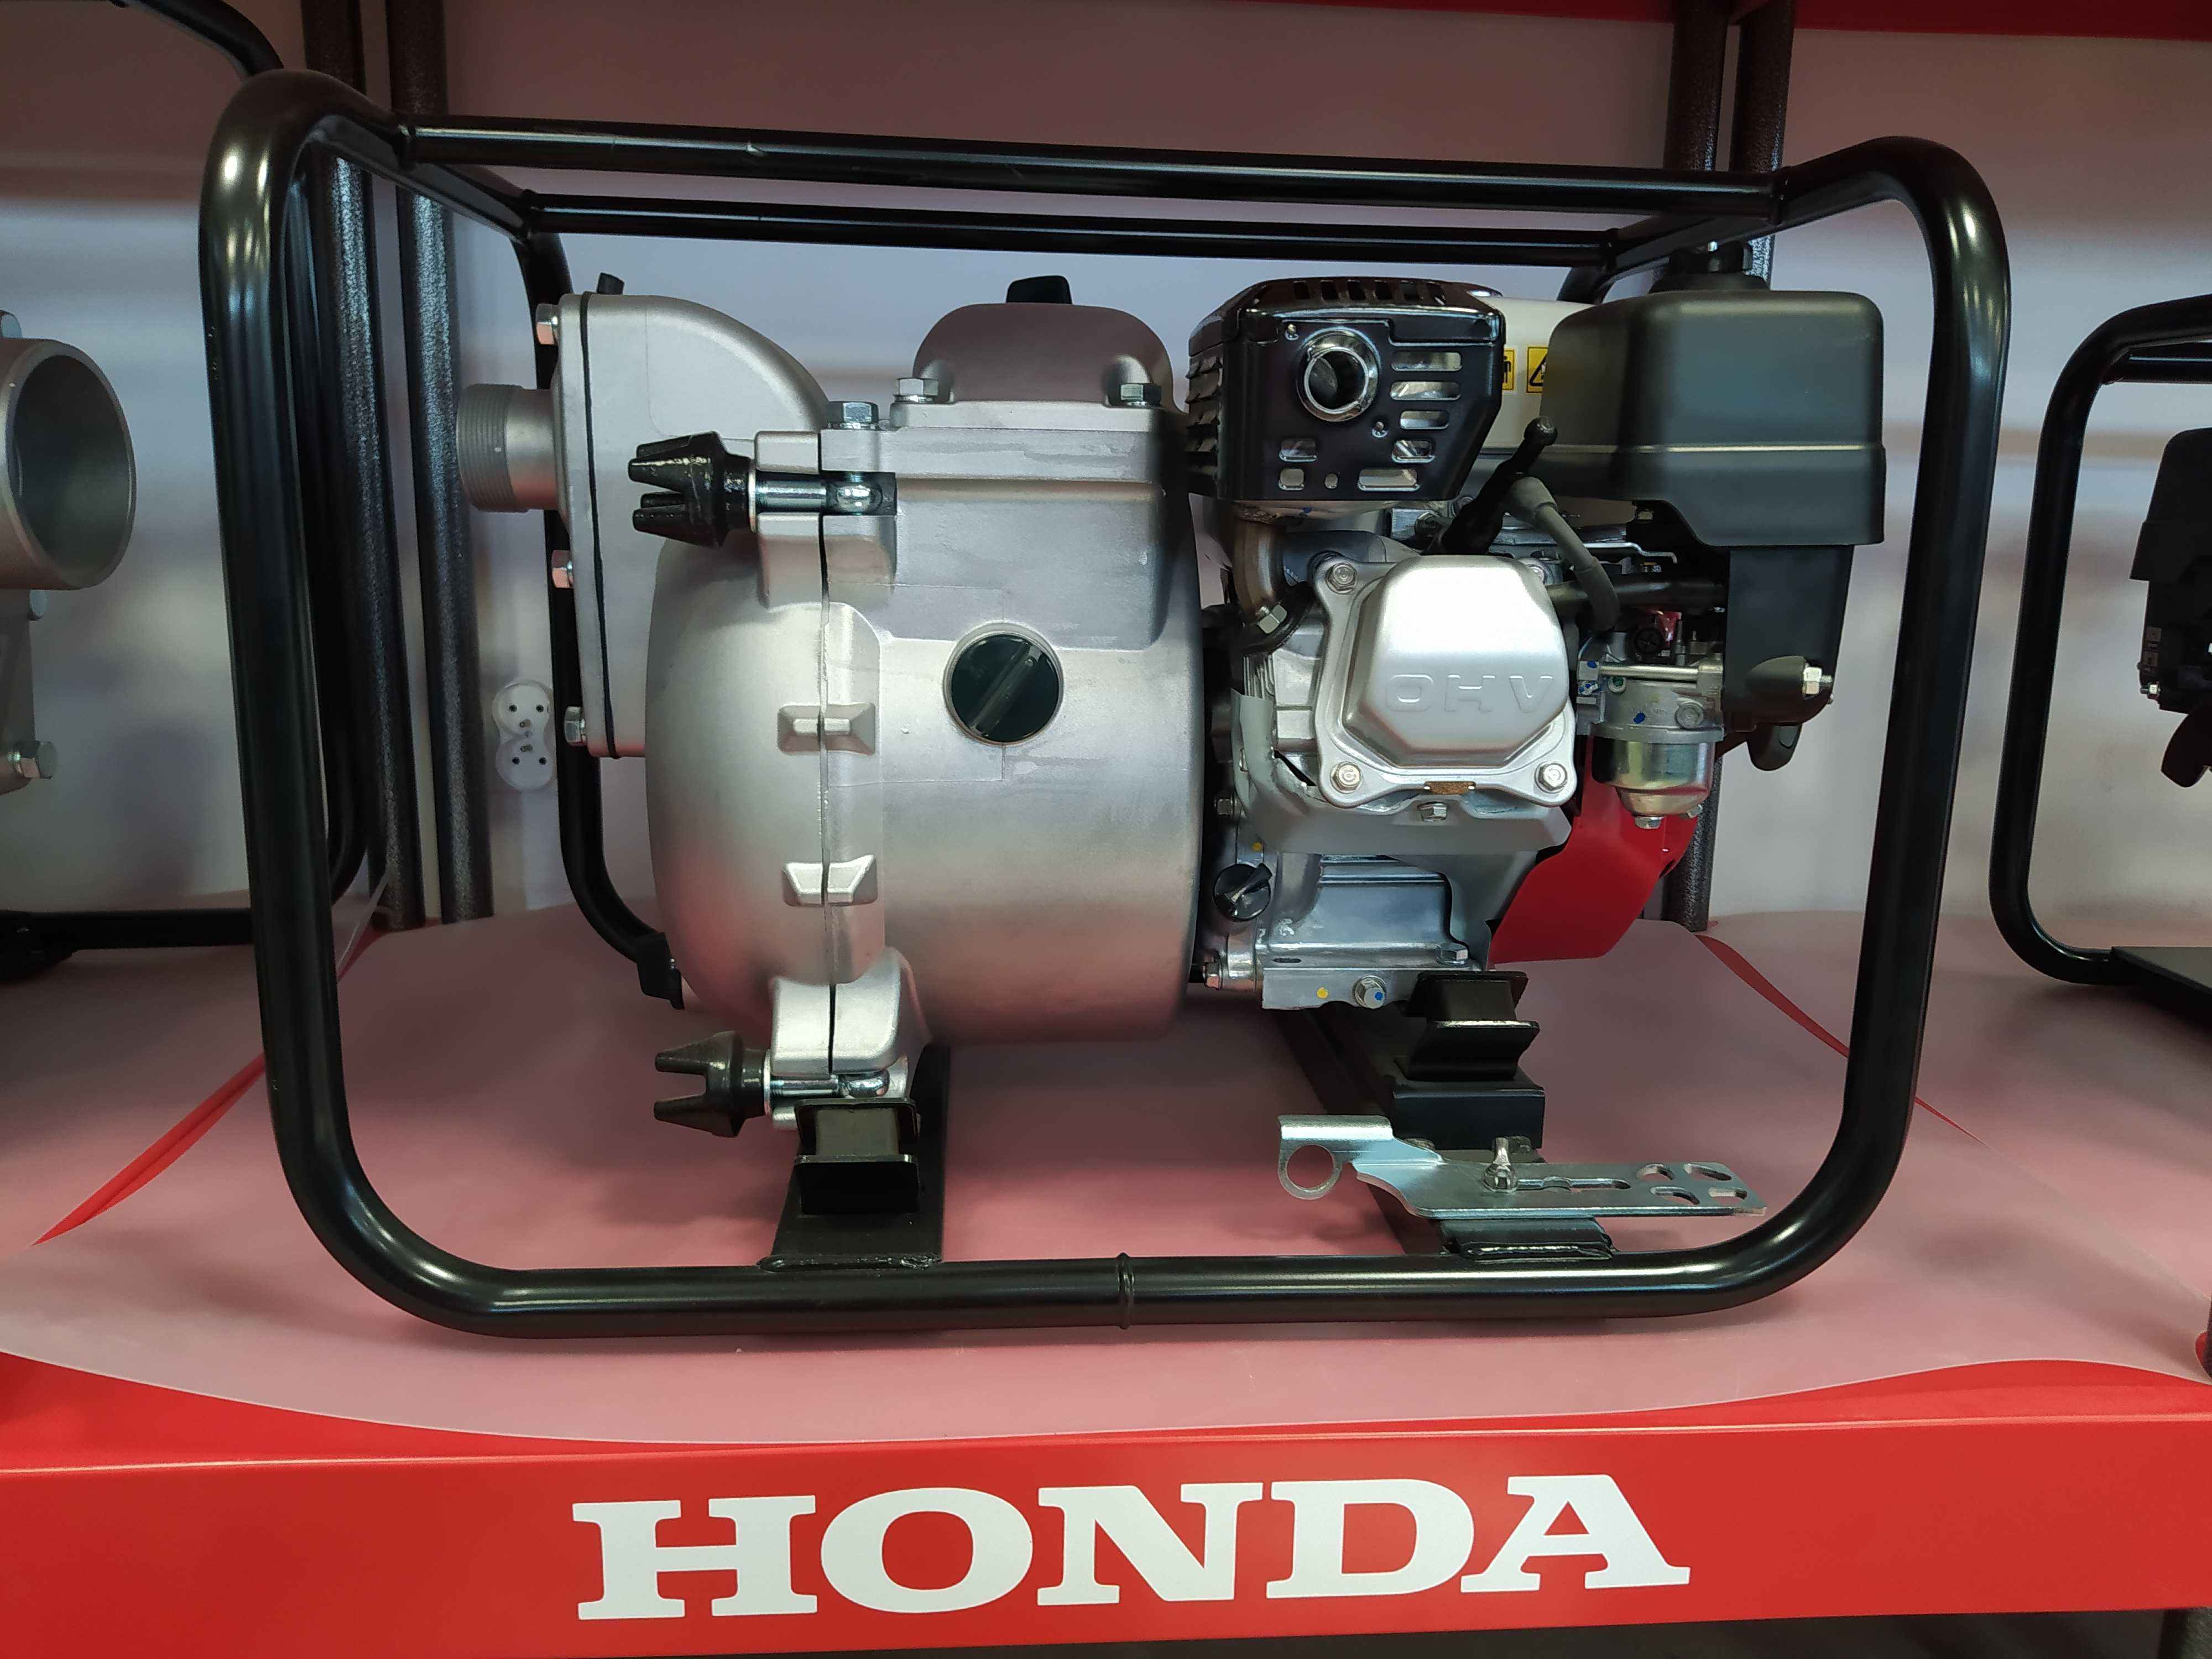 Pompa Honda oryginalna 700l/min 5 lat gwarancji WT20X